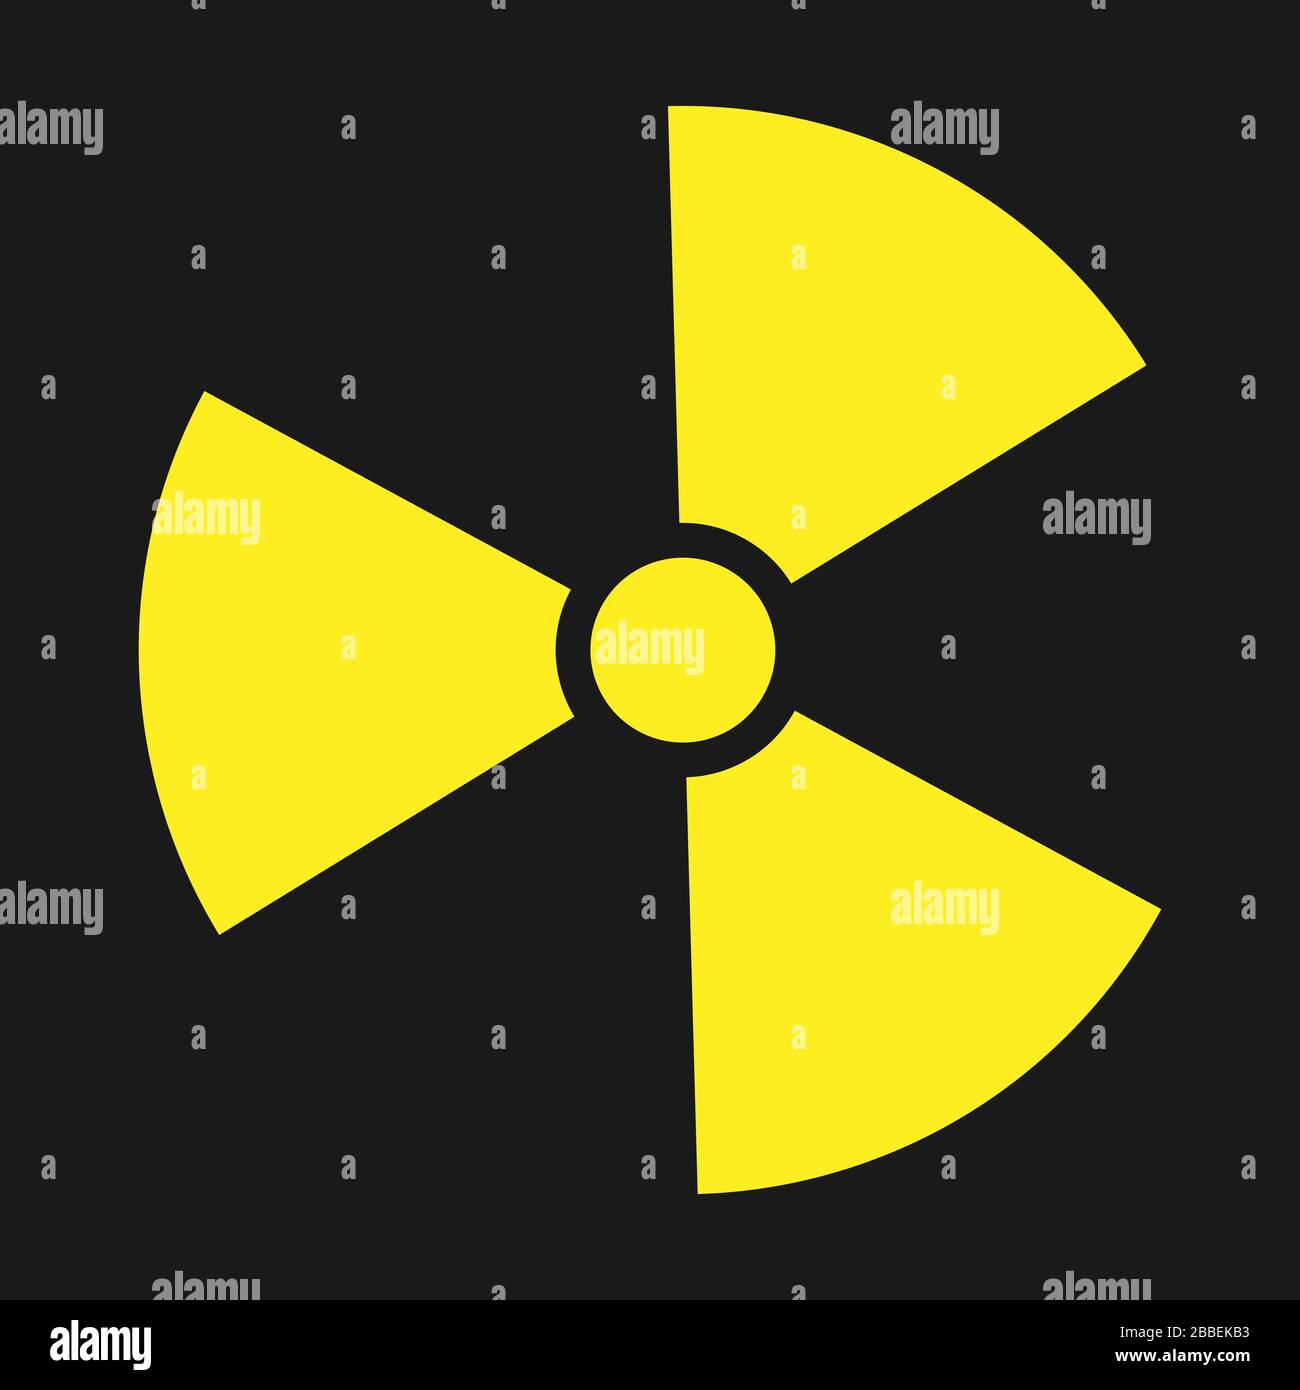 Symbol für Radioaktivität. Radioaktives Material, Gefahr oder Risiko. Einfaches flaches Design, isoliert auf weißem Hintergrund. Abbildung des Lagerbestands Stock Vektor